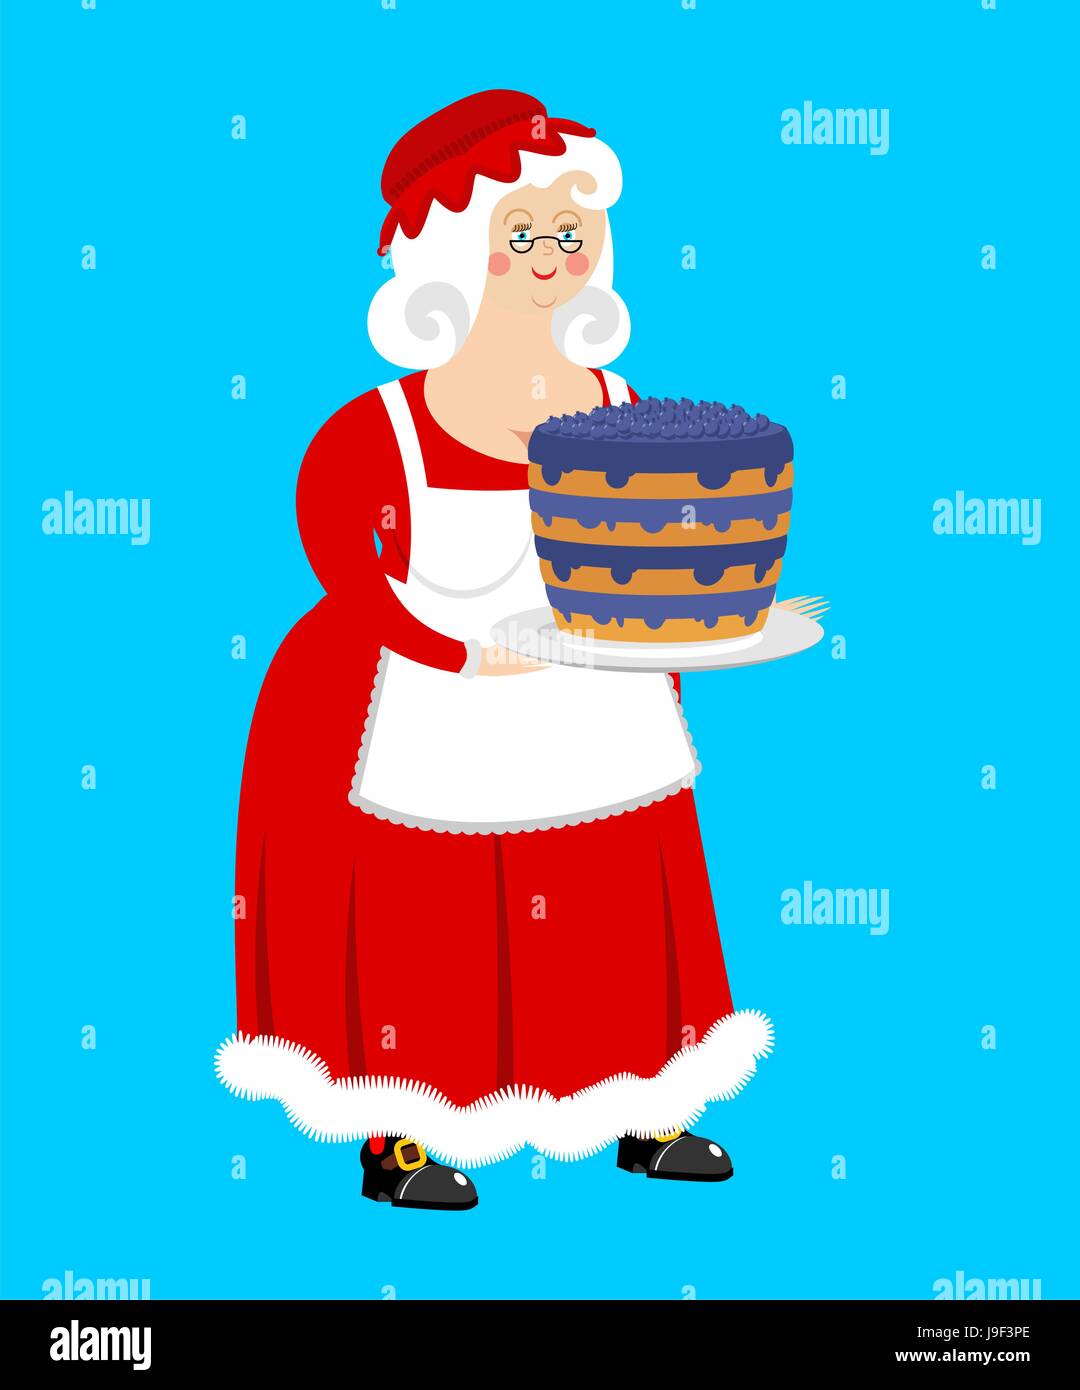 Mrs. Claus-Heidelbeer-Kuchen. Ehefrau von Santa Claus und Dessert. Weihnachten-Frau in rotem Kleid und weißer Schürze. Xmas feale Stock Vektor